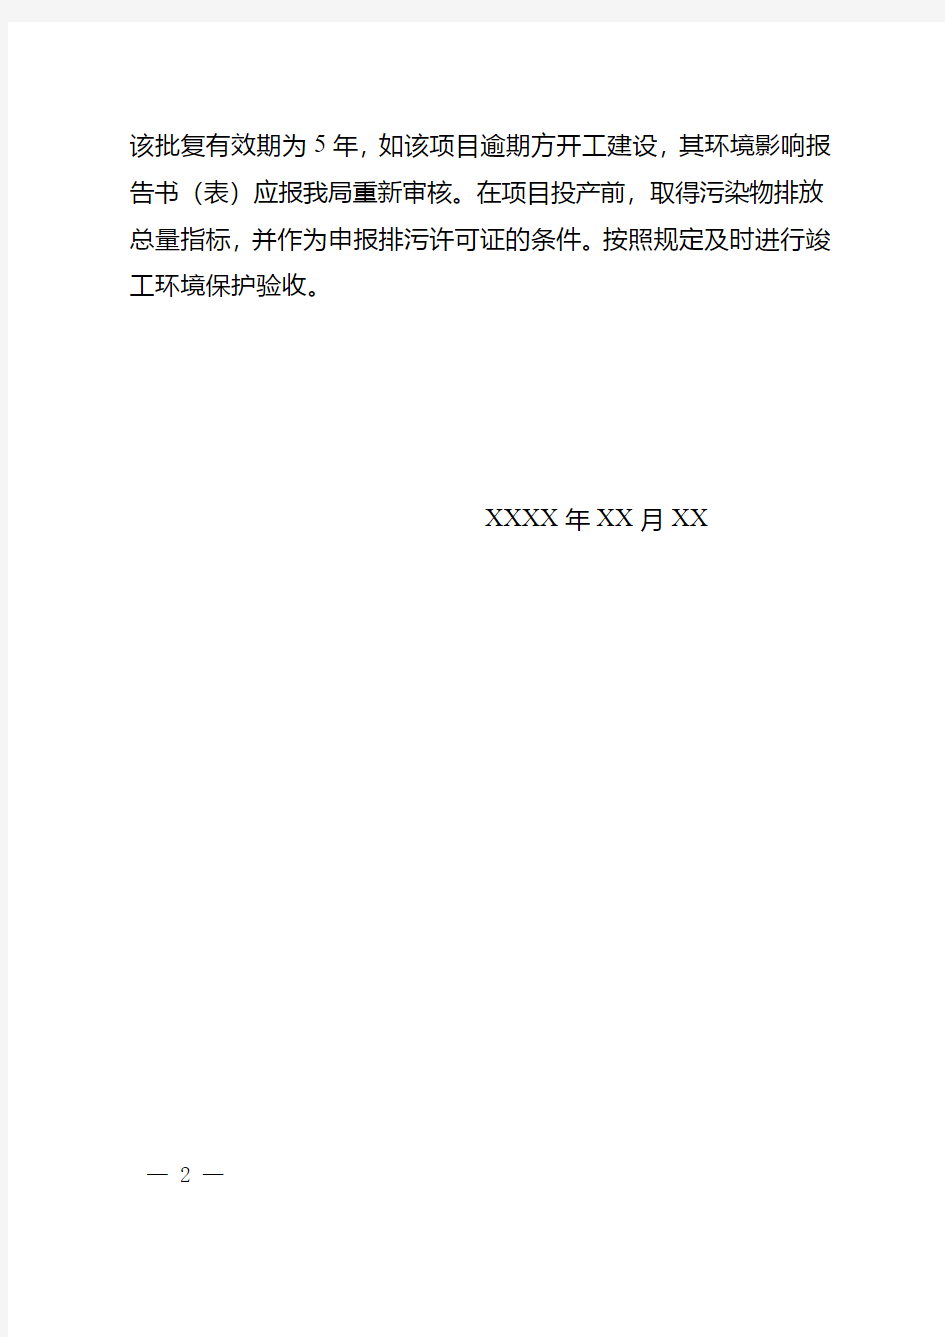 河南省建设项目环评文件告知承诺制审批批复文件(模板)